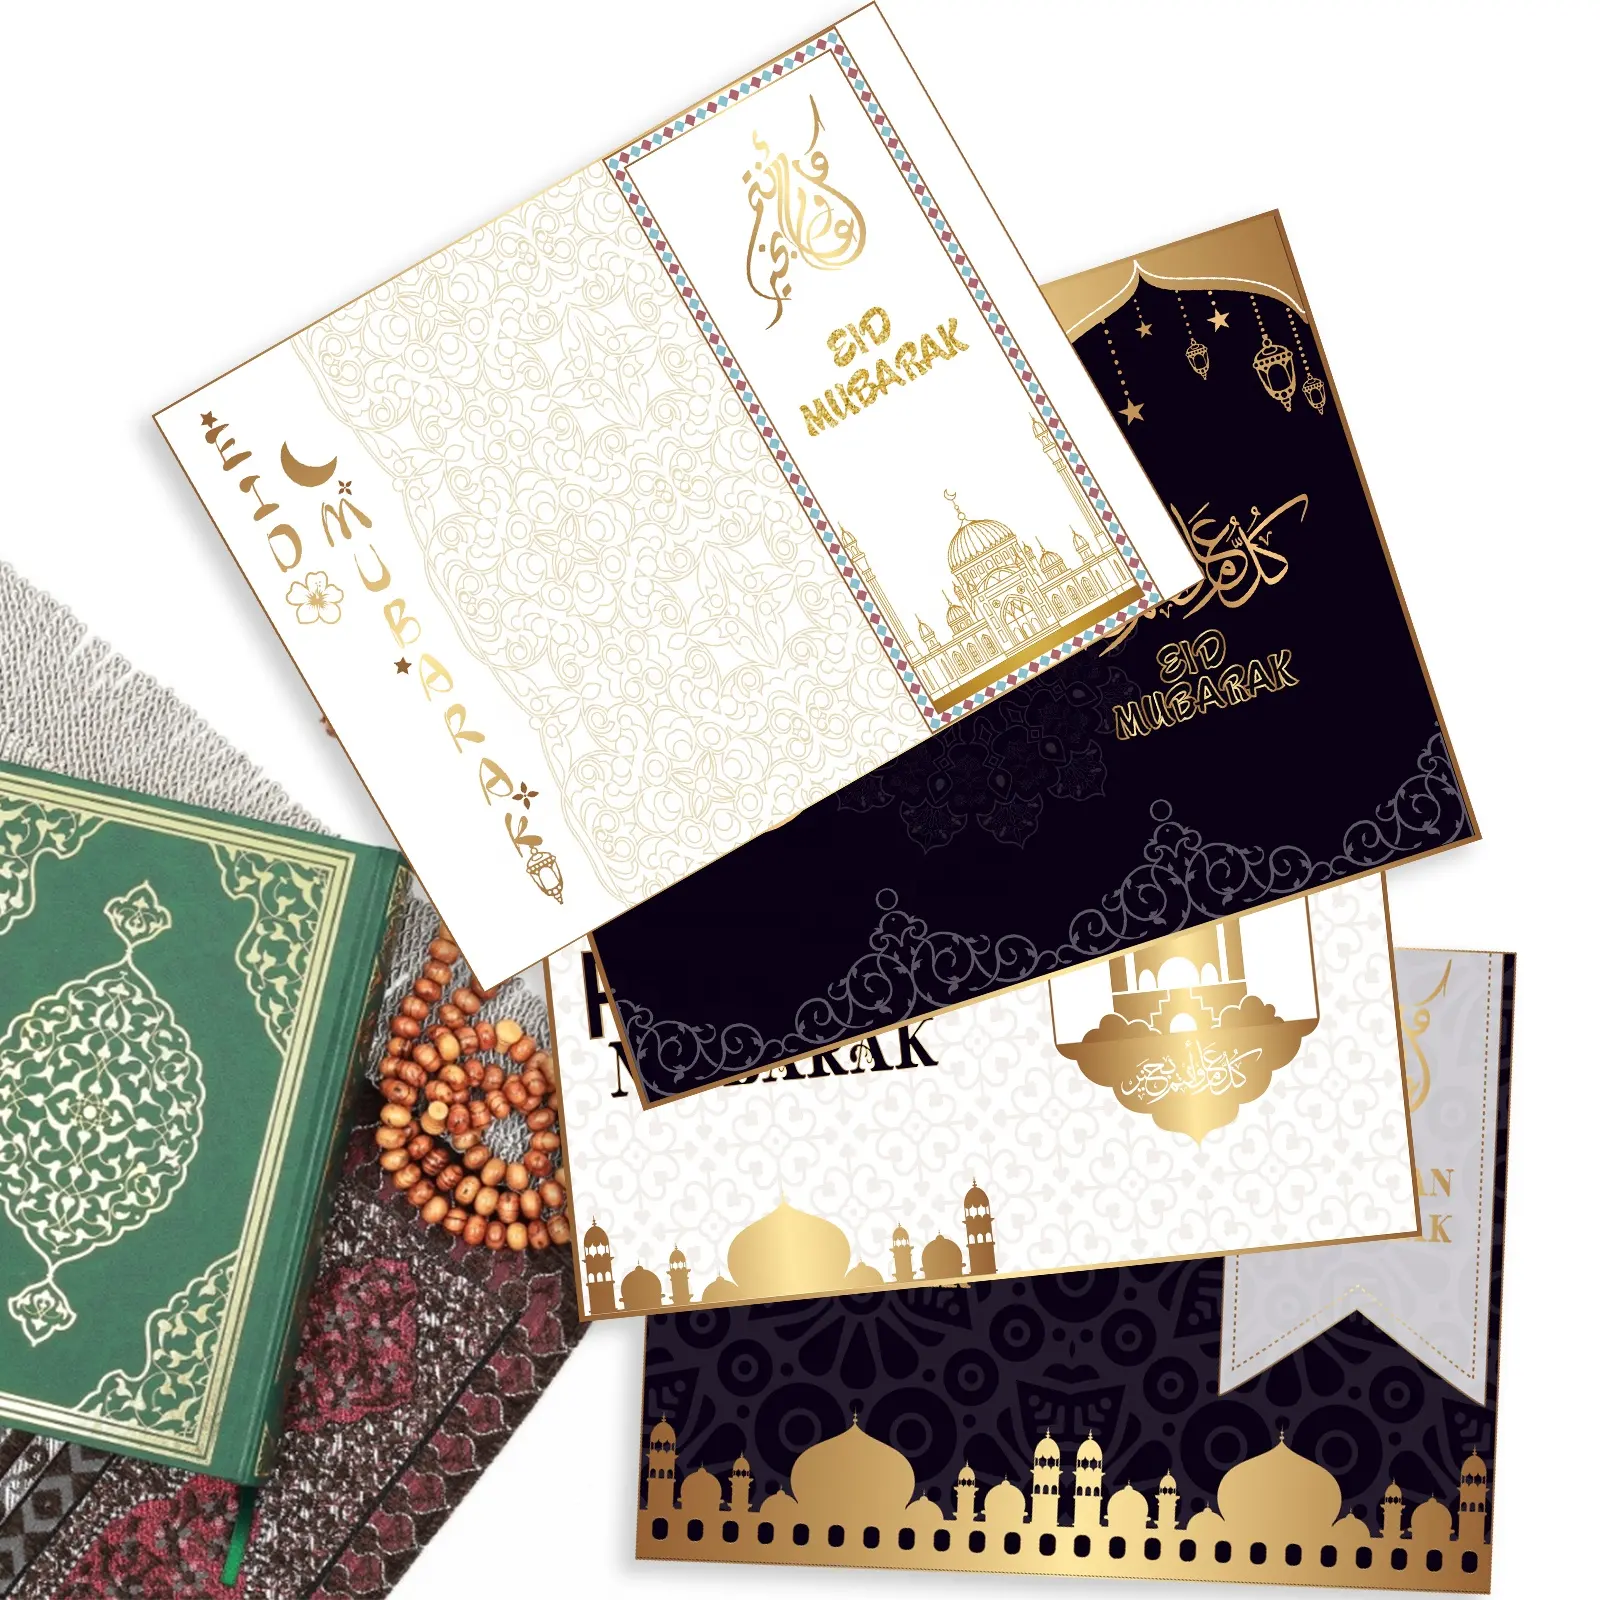 HK004 Ramadã Muçulmano Eid Mubarak Cartão do Lugar da Tabela Cartões e Envelopes Do Convite Do Partido Fontes Do Partido Decorações Eid